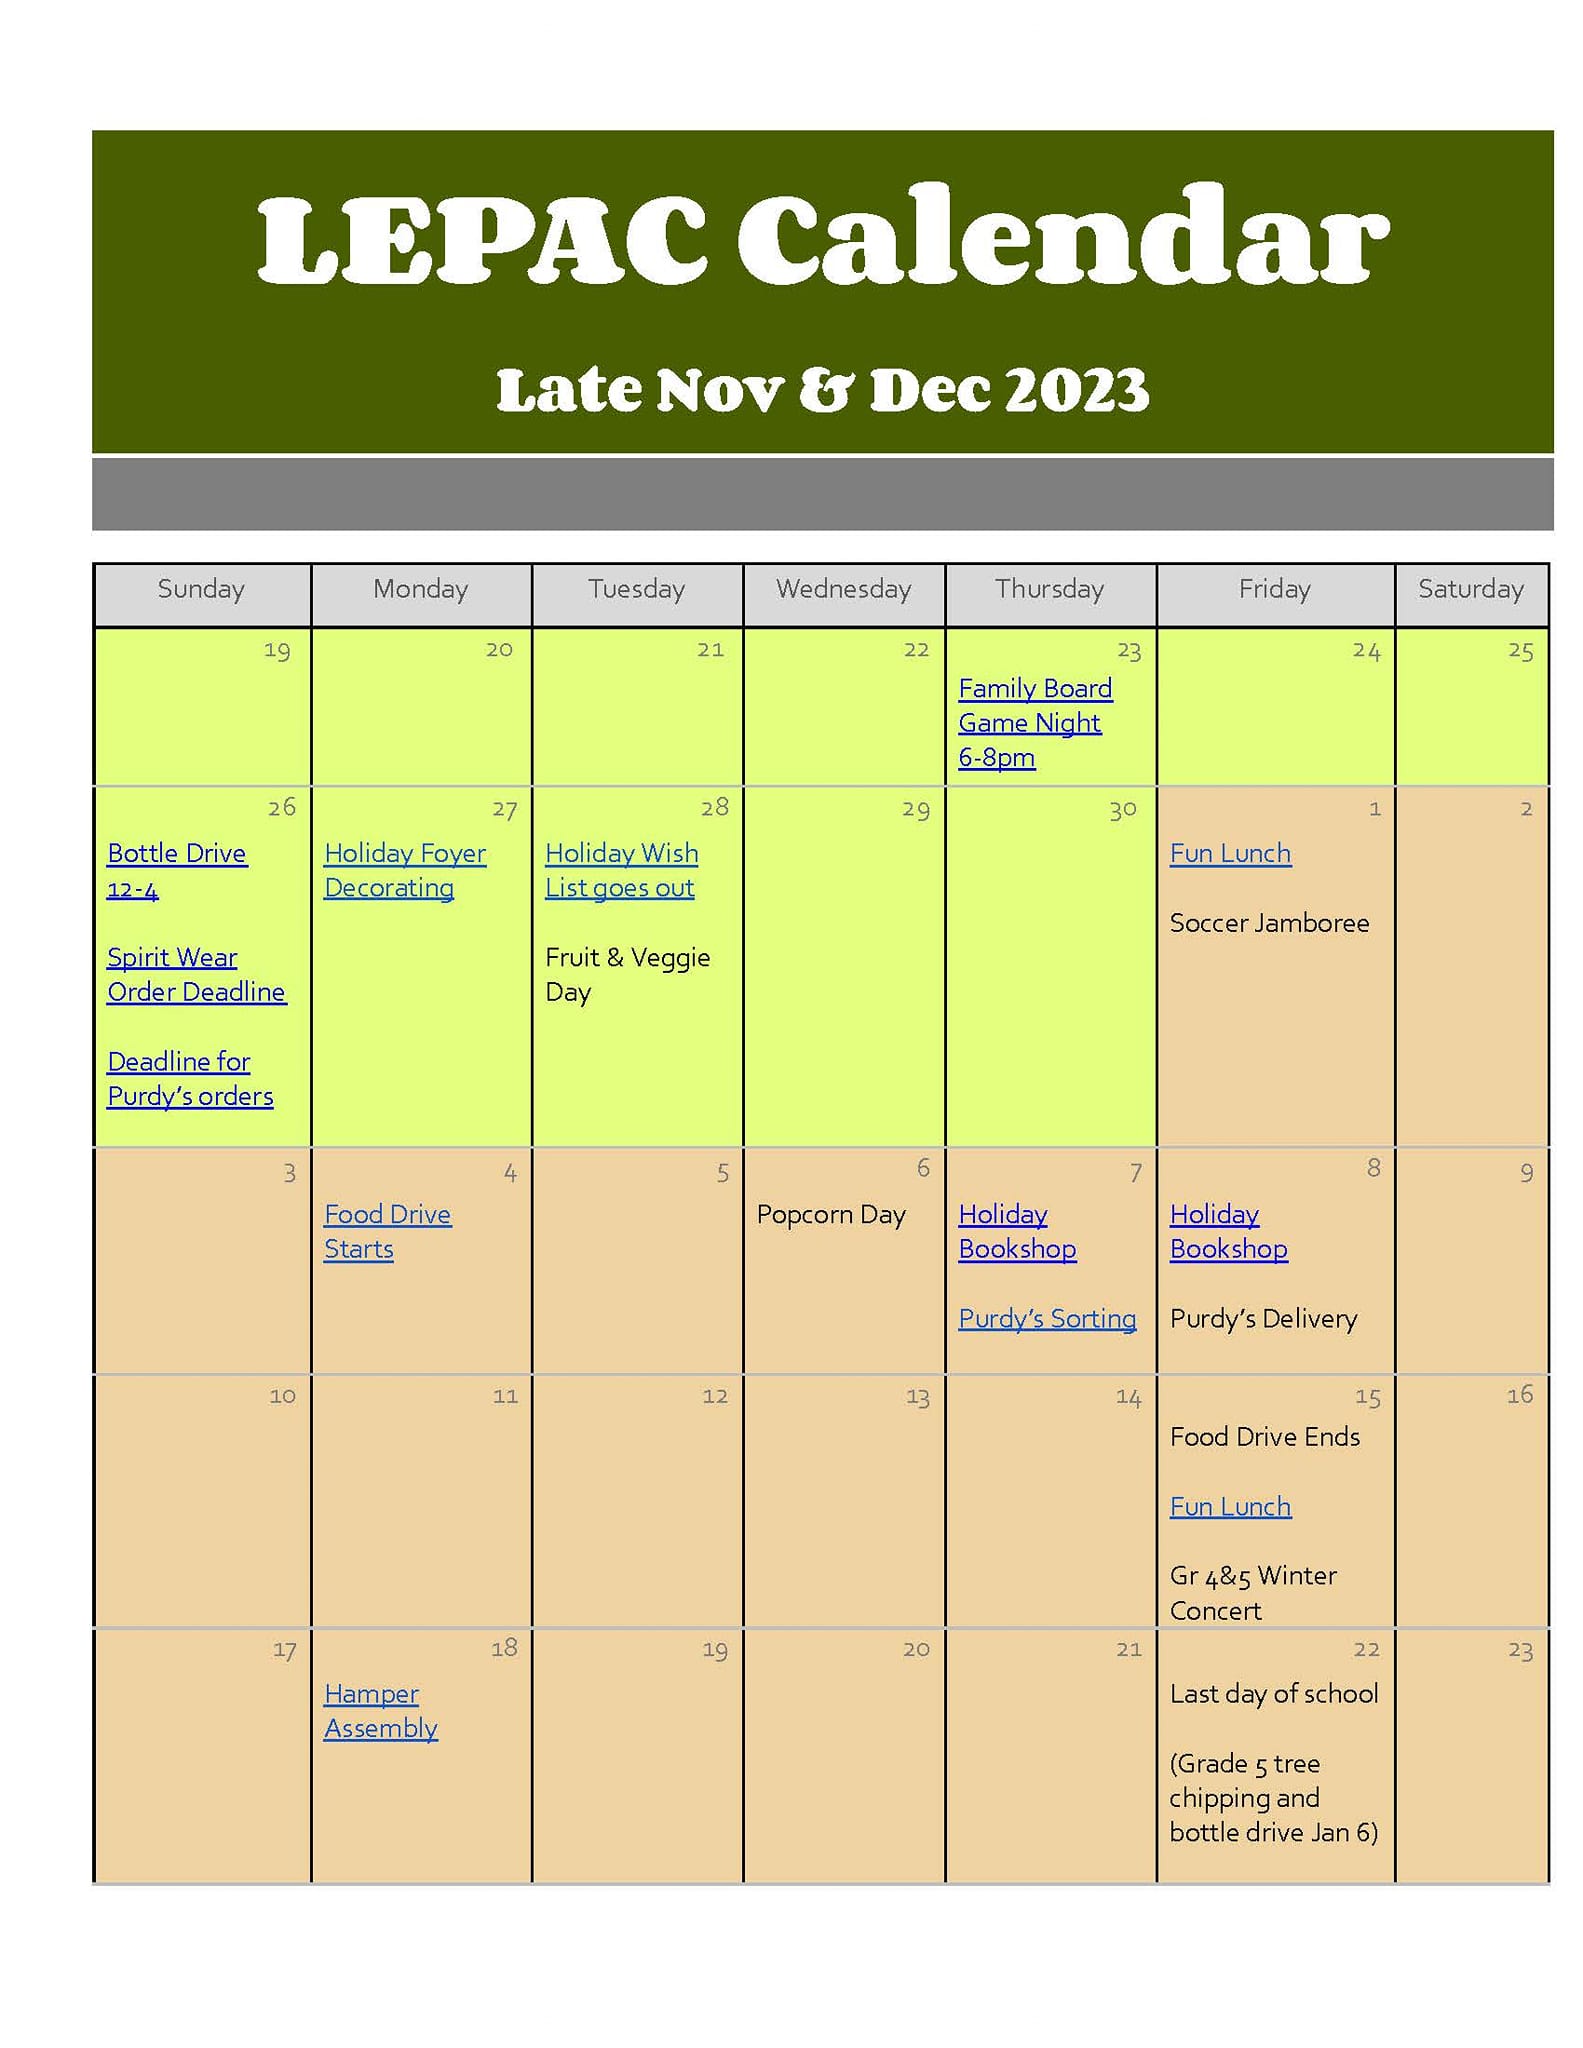 LEPAC Calendar NovDec 2023